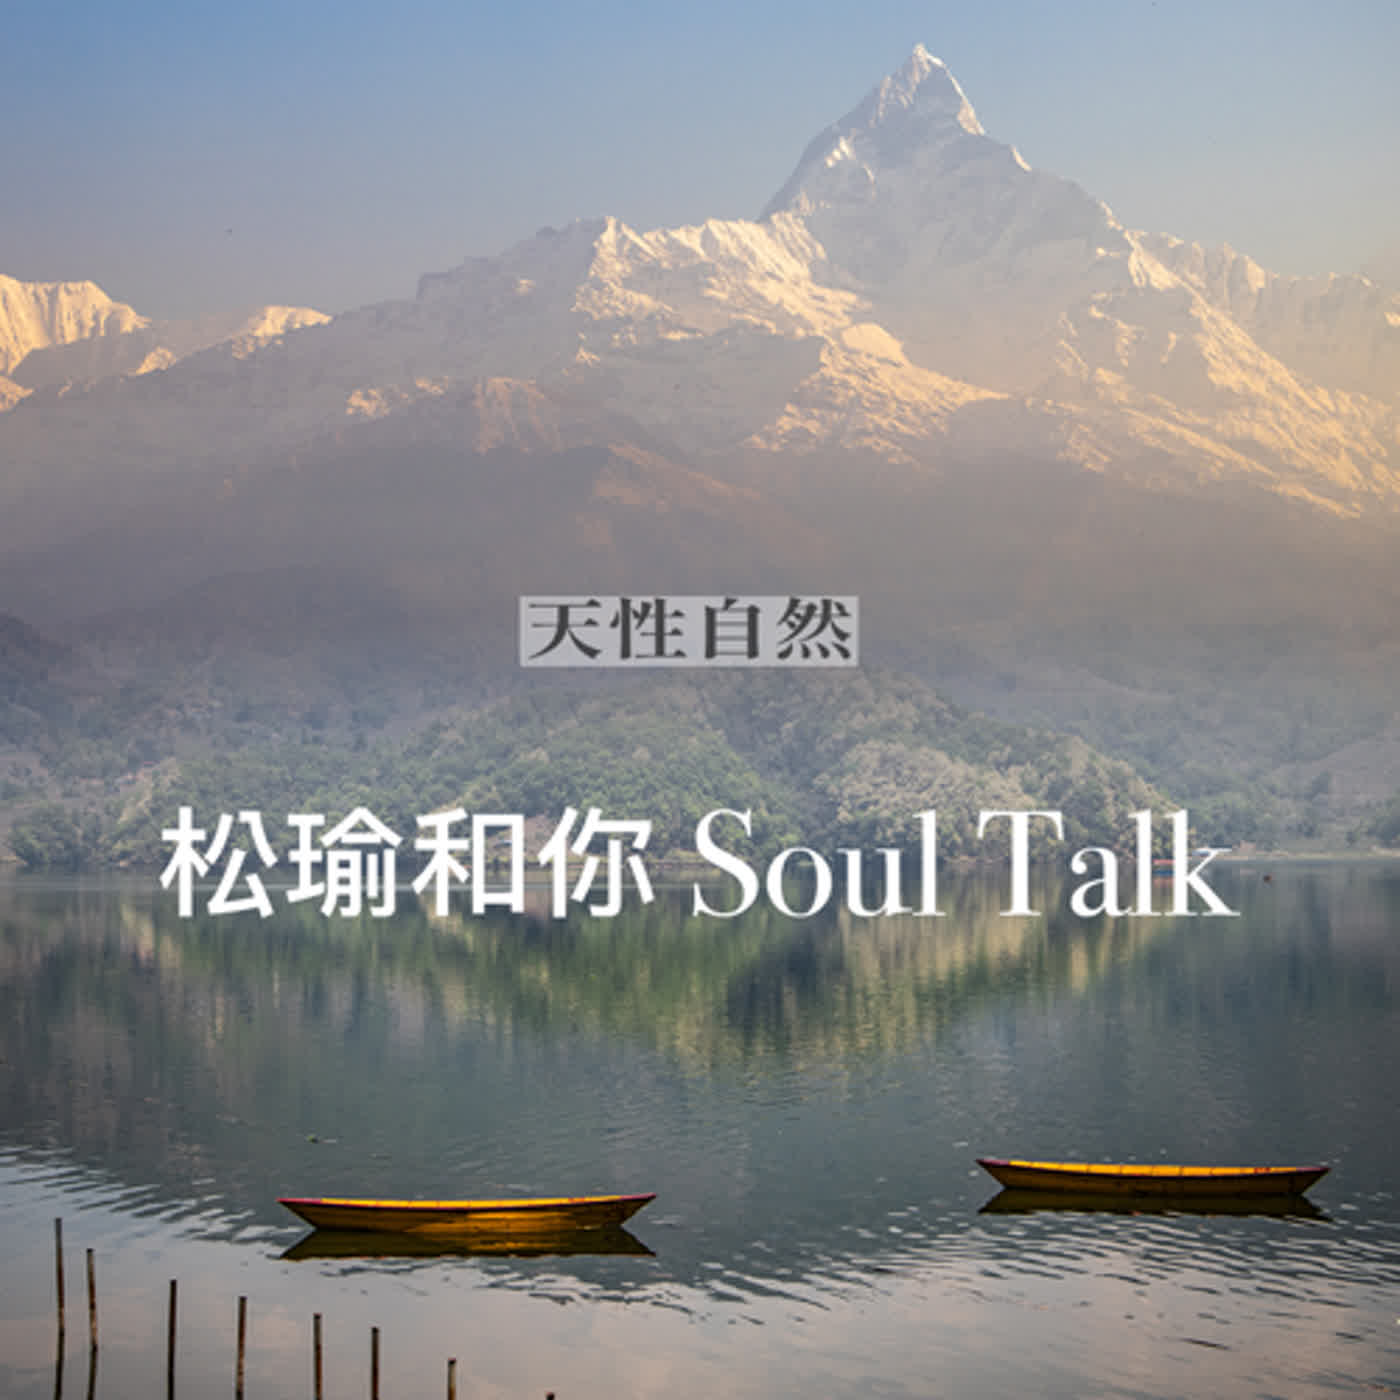 天性自然Awakening-松瑜和你Soul Talk